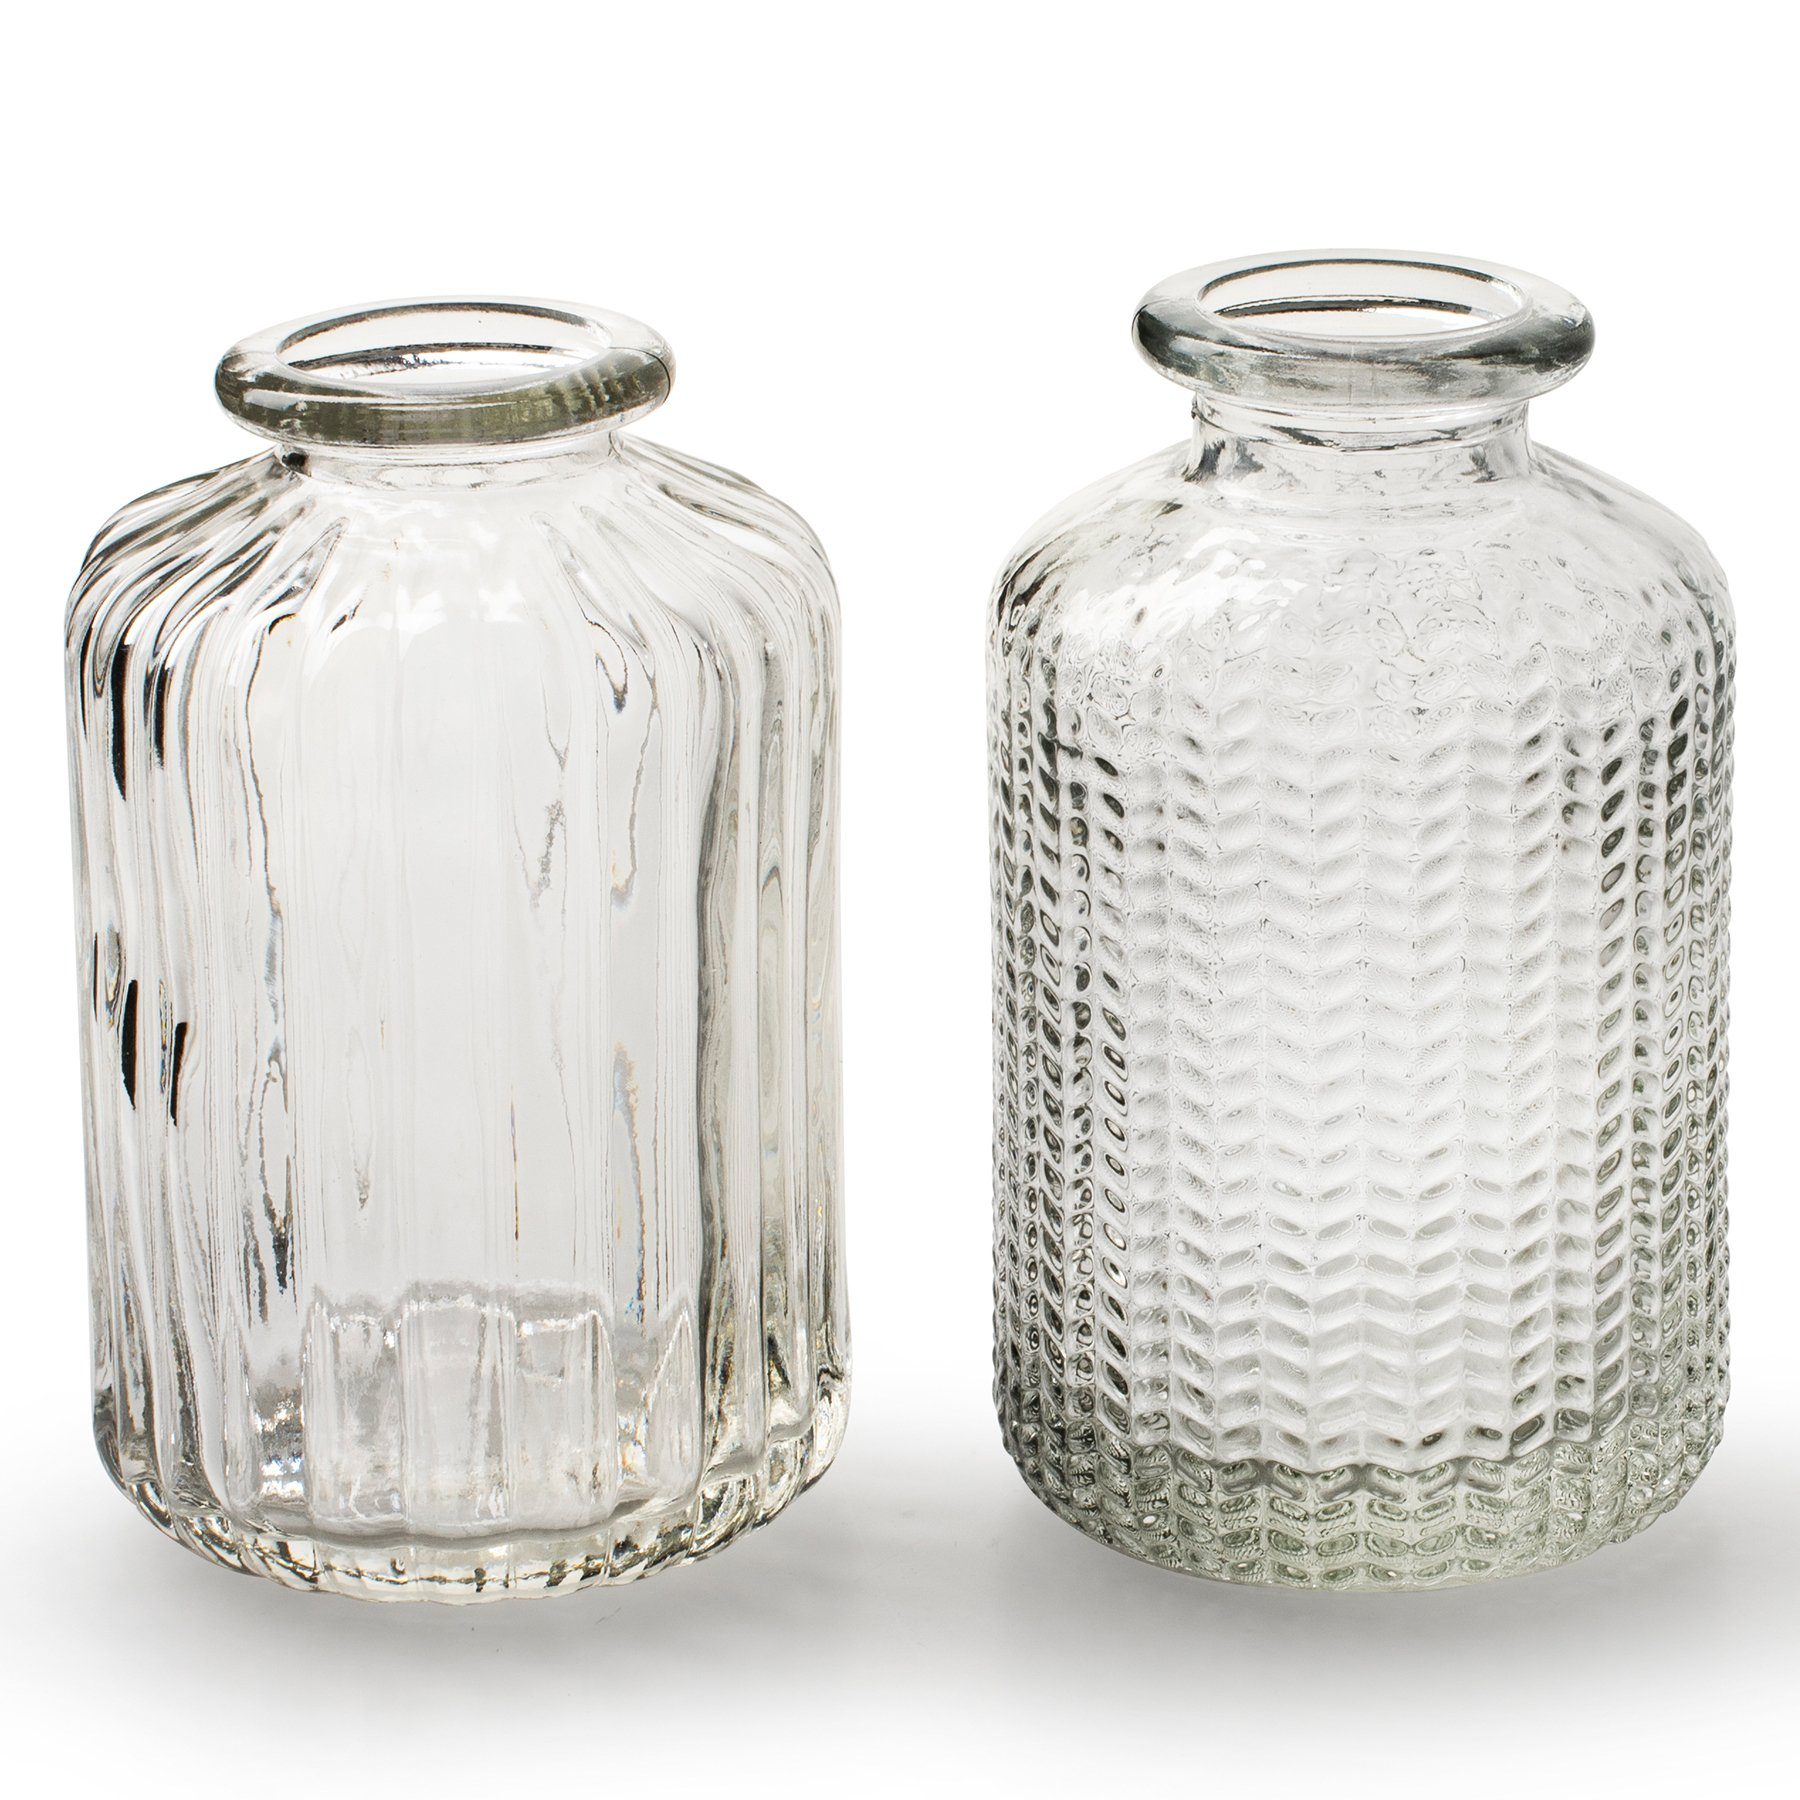 Annastore Dekovase 12 x kleine Vasen aus Glas Vintage - Вази для квітів (Tischvasen, Glasvasen, Dekoflaschen), H 10 cm - Ø 6 cm, Glasflaschen, Glasfläschchen, Deko-Flaschen